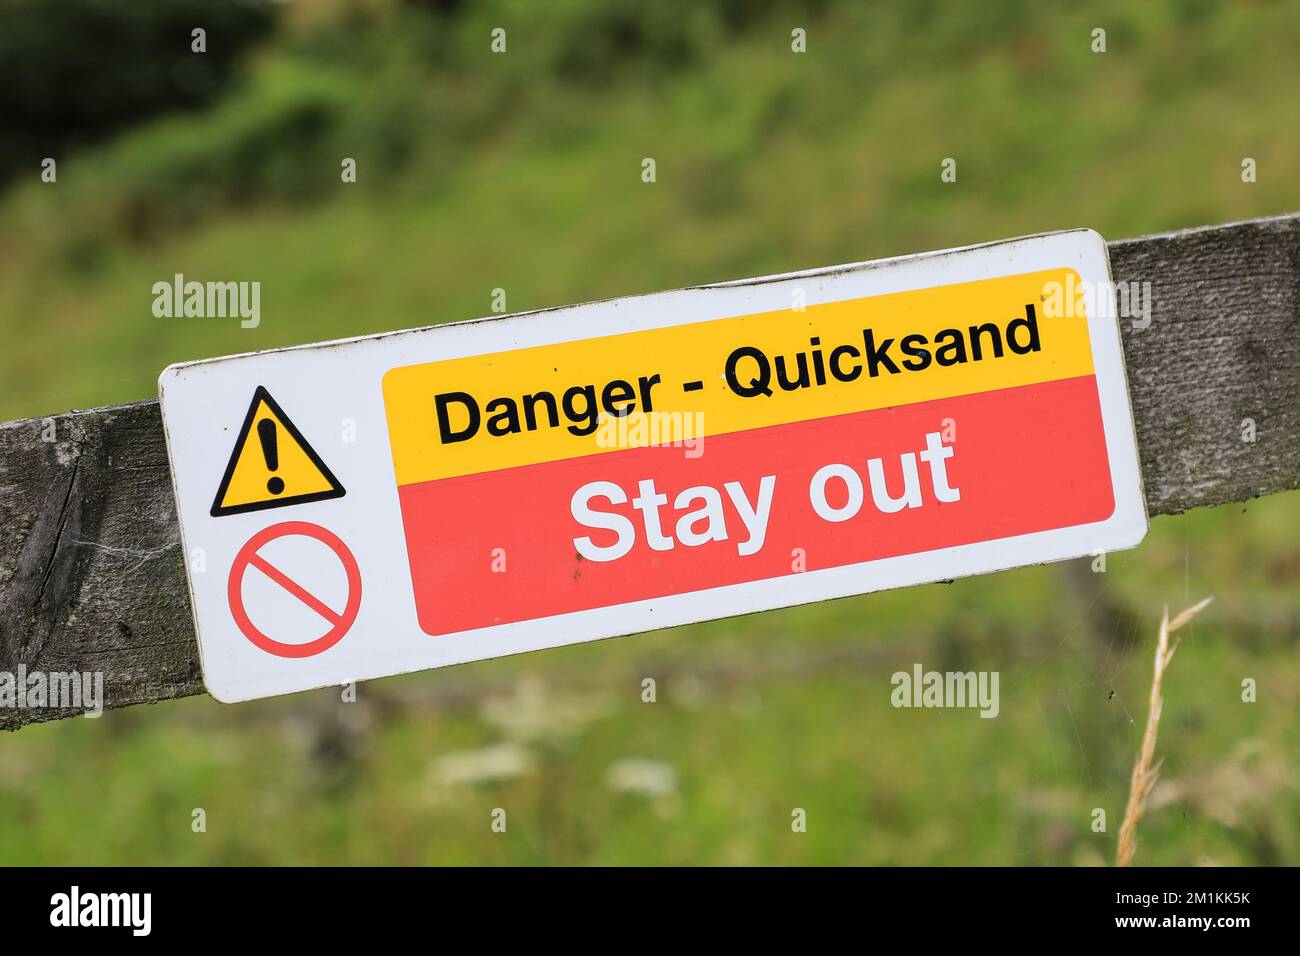 Un segnale di avvertimento che dice "pericolo - Quicksand", "stare fuori", Inghilterra, Regno Unito Foto Stock